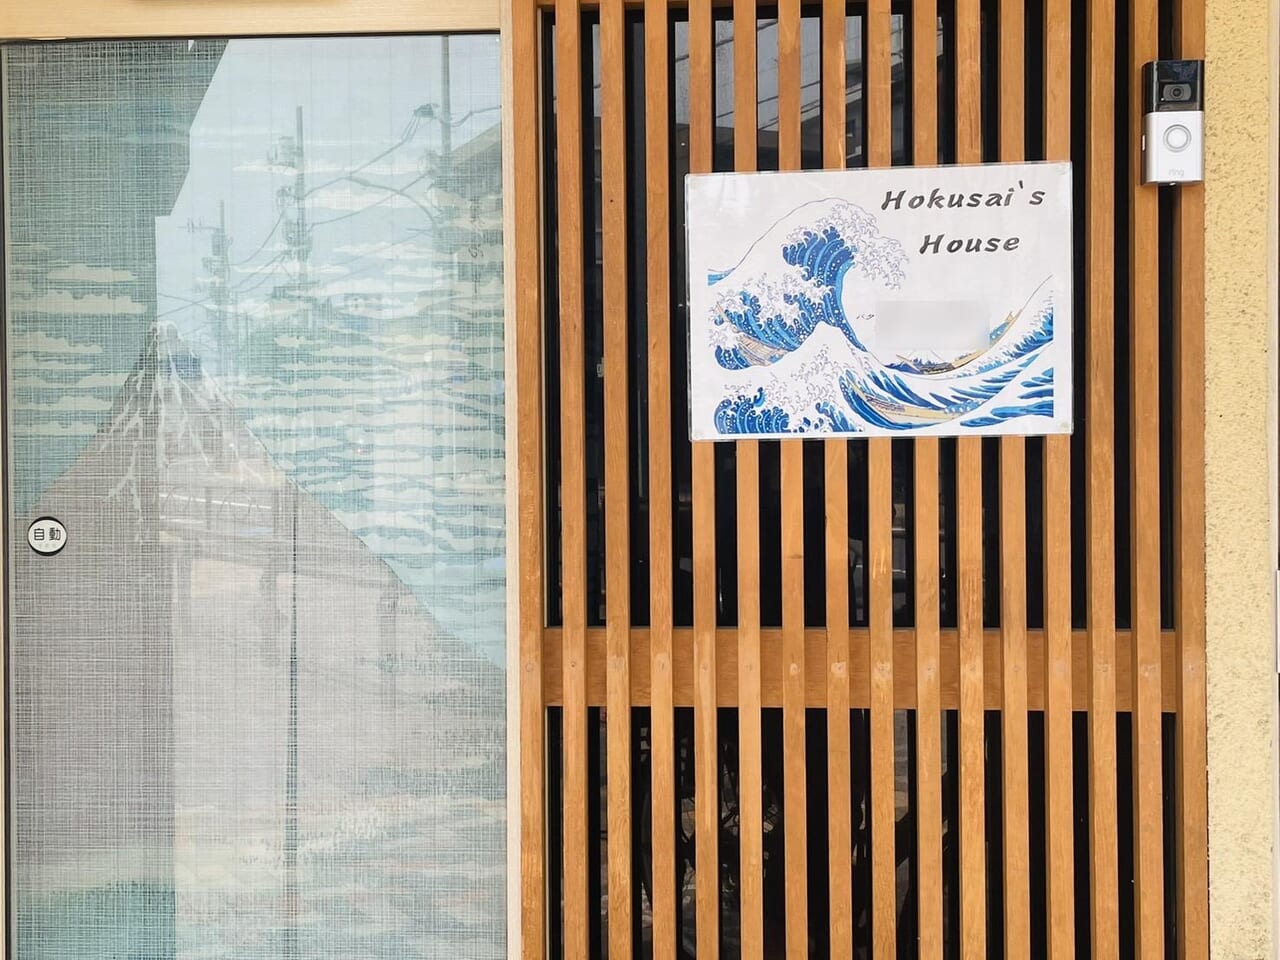 格子戸に掛けられた「Hokusai’s house」の看板